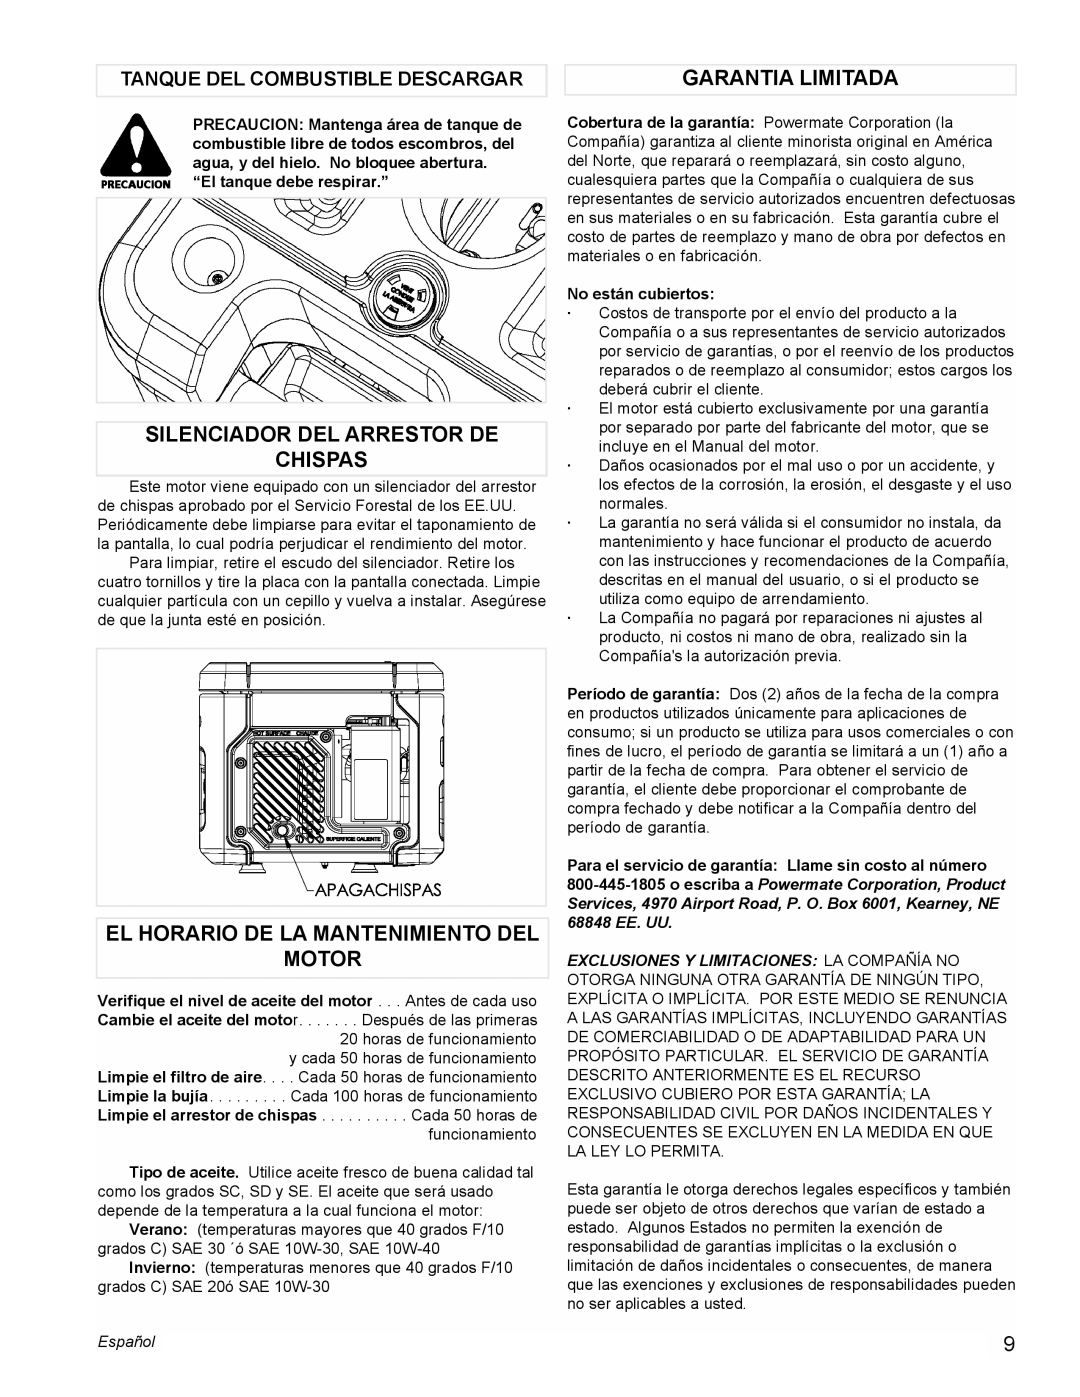 Powermate PMC401856 manual Garantia Limitada, Silenciador Del Arrestor De Chispas, El Horario De La Mantenimiento Del Motor 